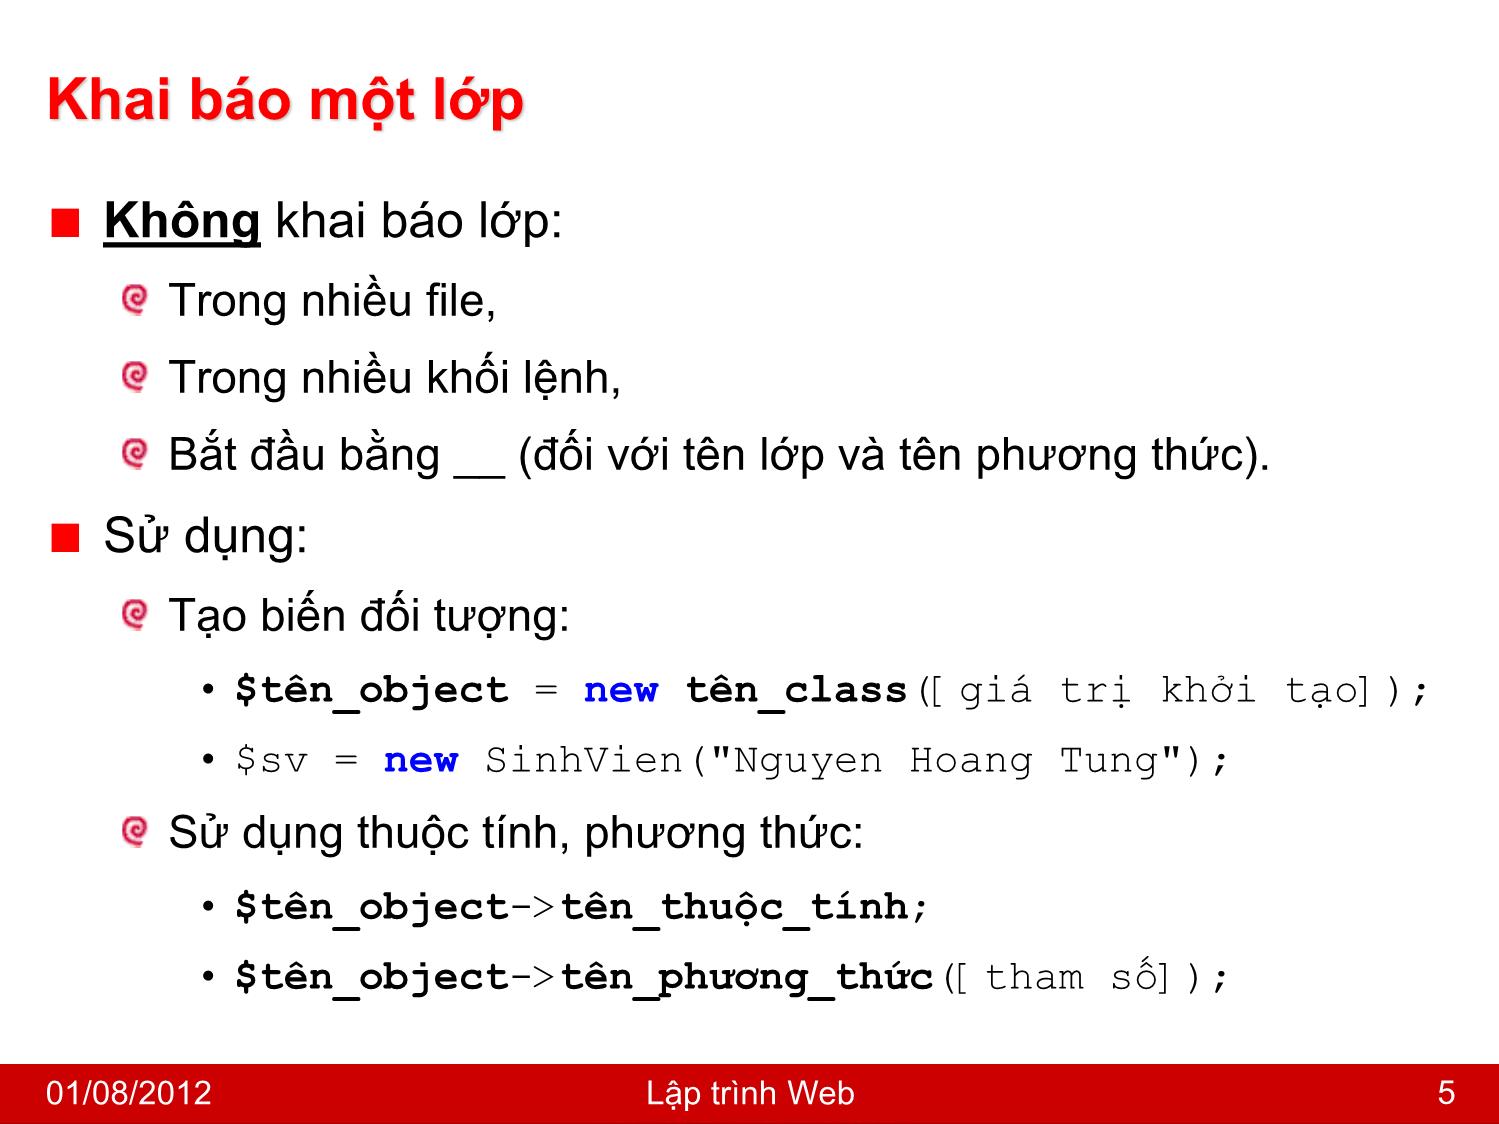 Bài giảng Công nghệ Web và ứng dụng - Bài 2: Lập trình hướng đối tượng trong PHP - Nguyễn Hoàng Tùng trang 5